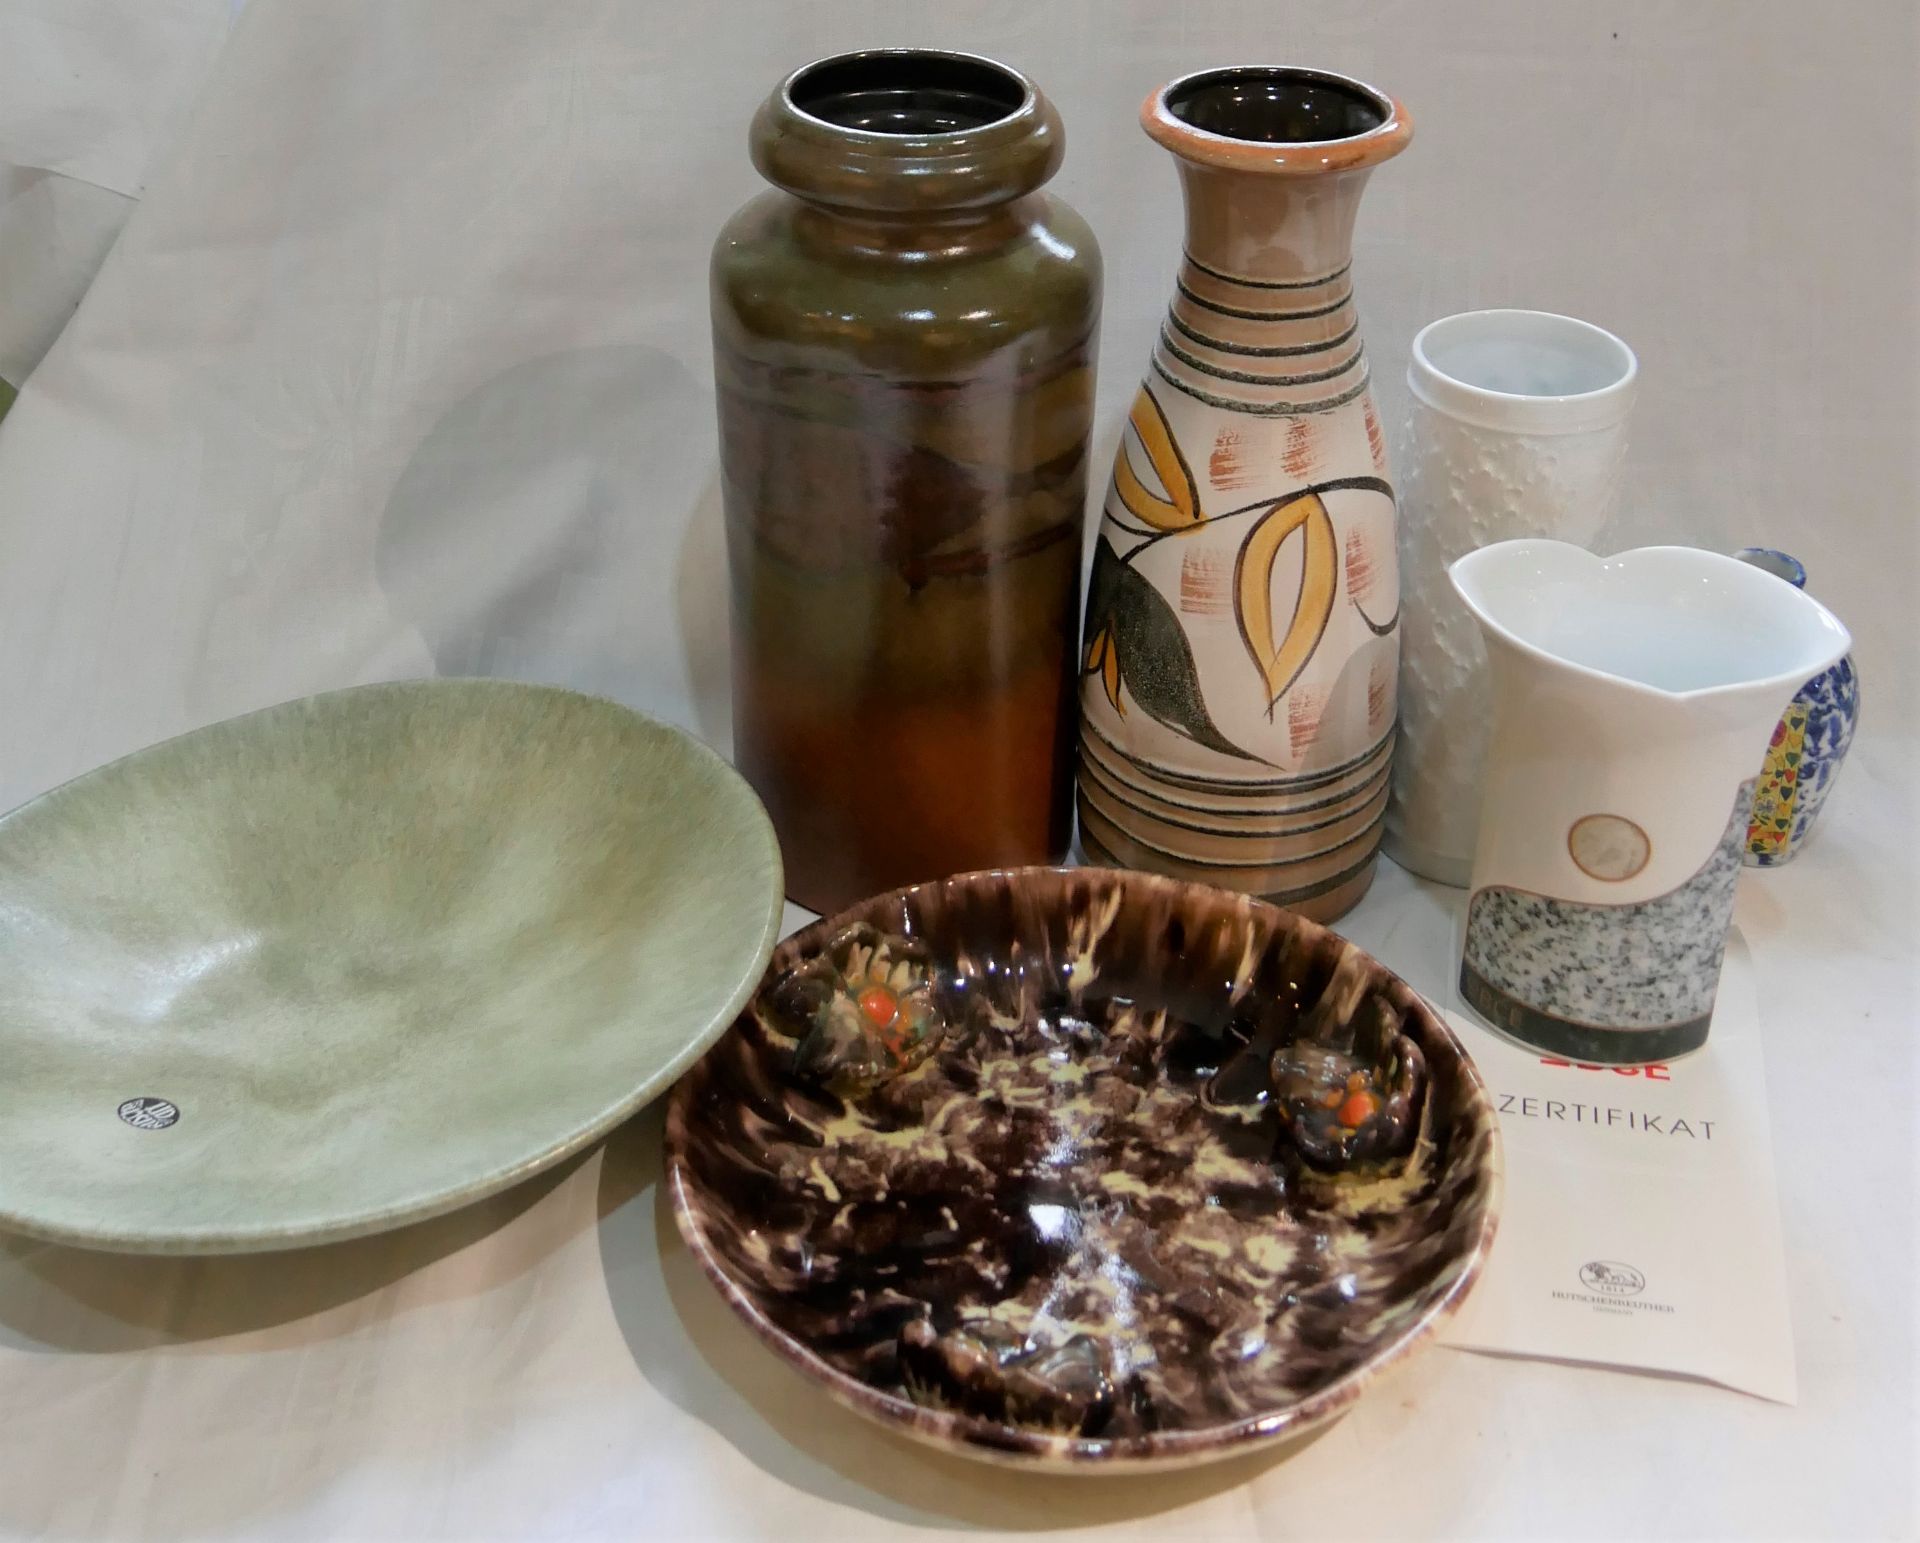 Lot Keramik und Porzellan aus Auflösung, dabei Vasen und Teller. Bitte besichtigen!